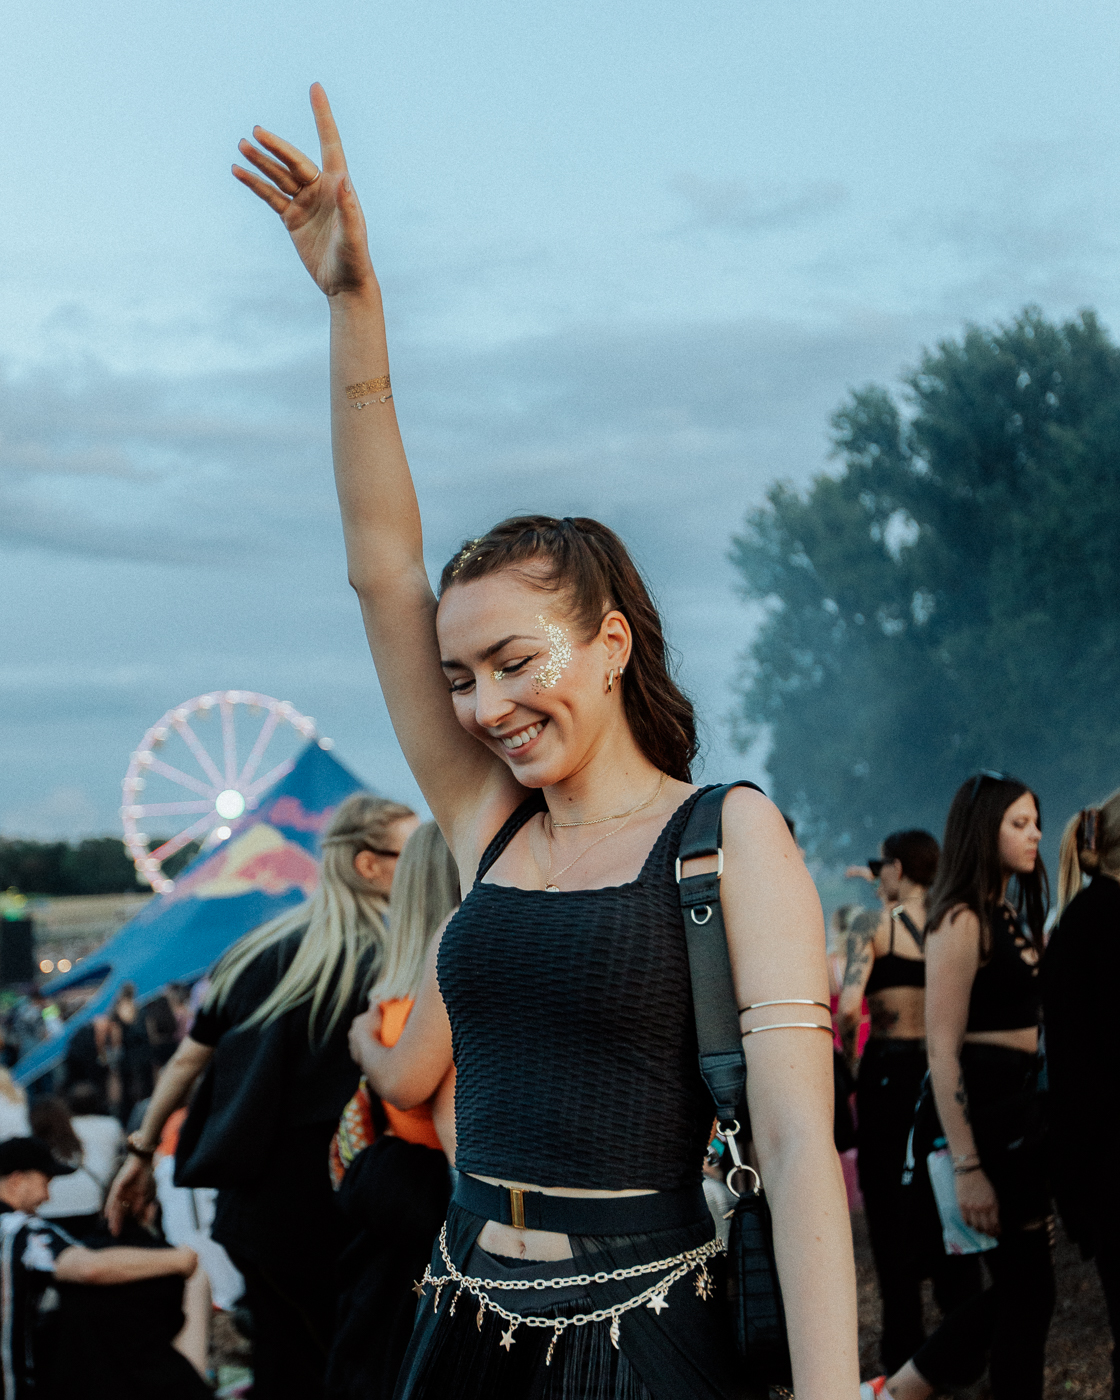 Eine Frau streckt ihren Arm in die Luft. Sie grinst. Der Himmel im Hintergrund ist blau, es sind viele Festivalbesucher des OpenBeatzs nahe Nürnberg zu sehen.